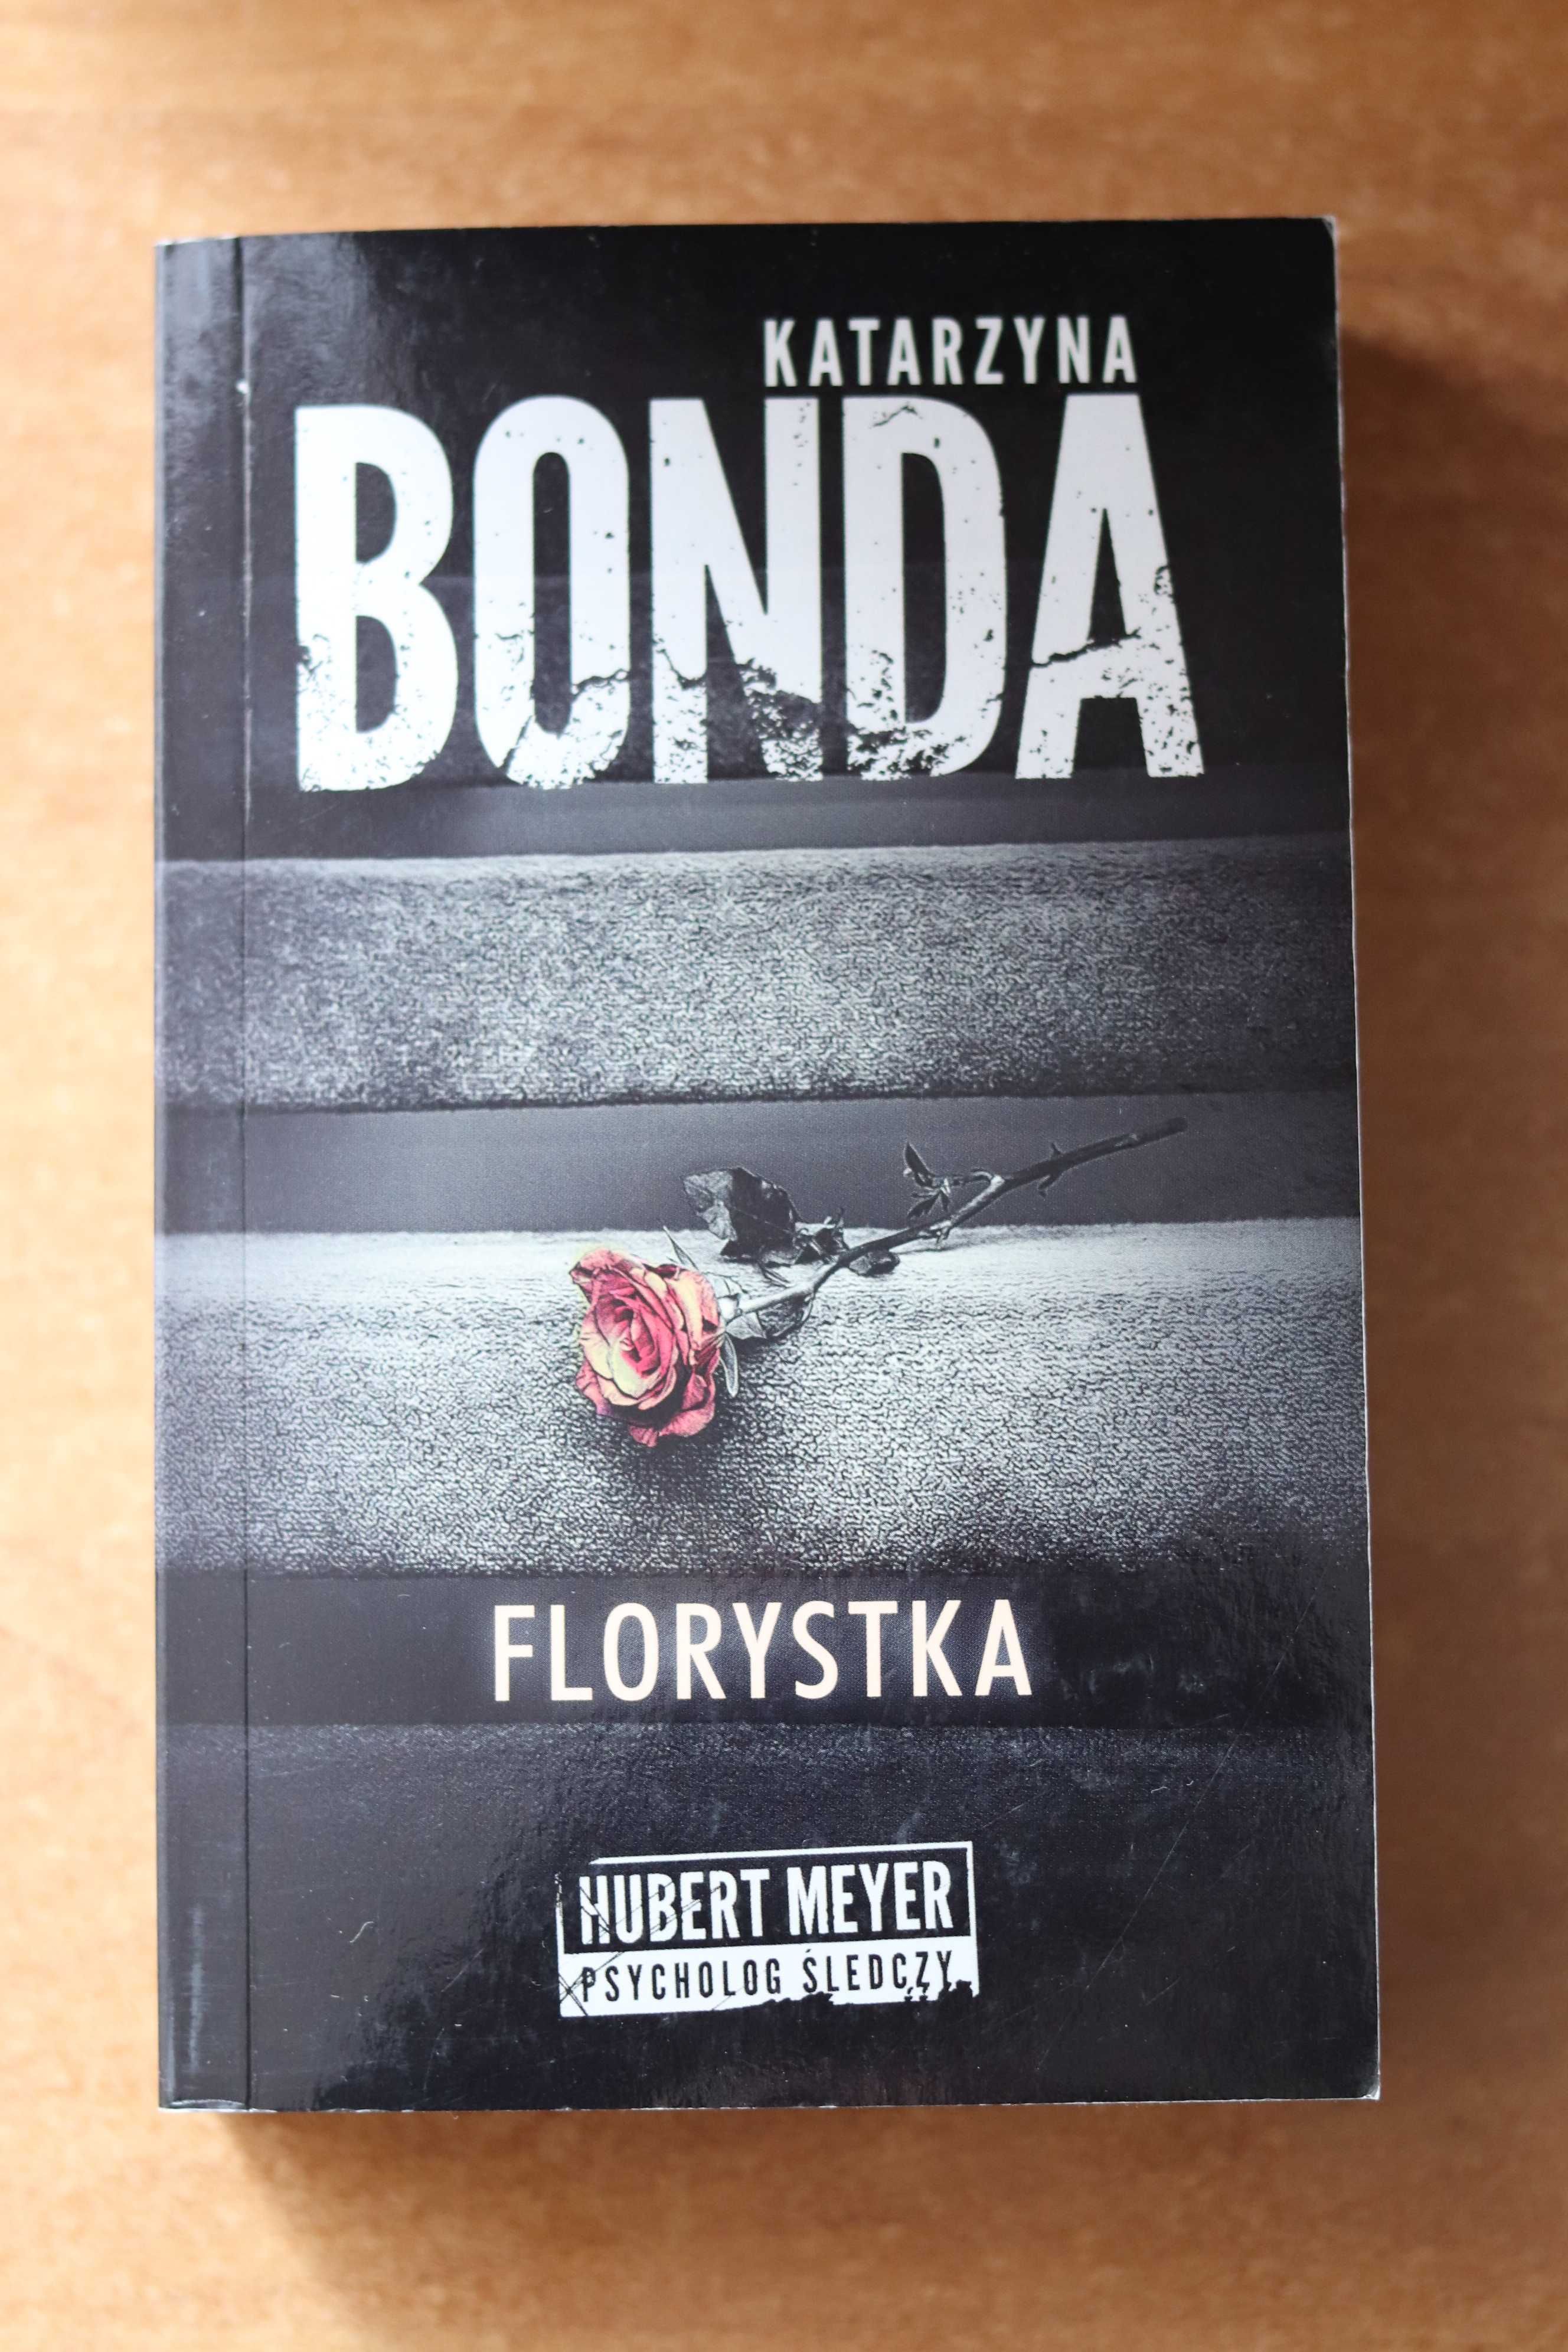 Florystka - Katarzyna Bonda książka wyd. kieszonkowe